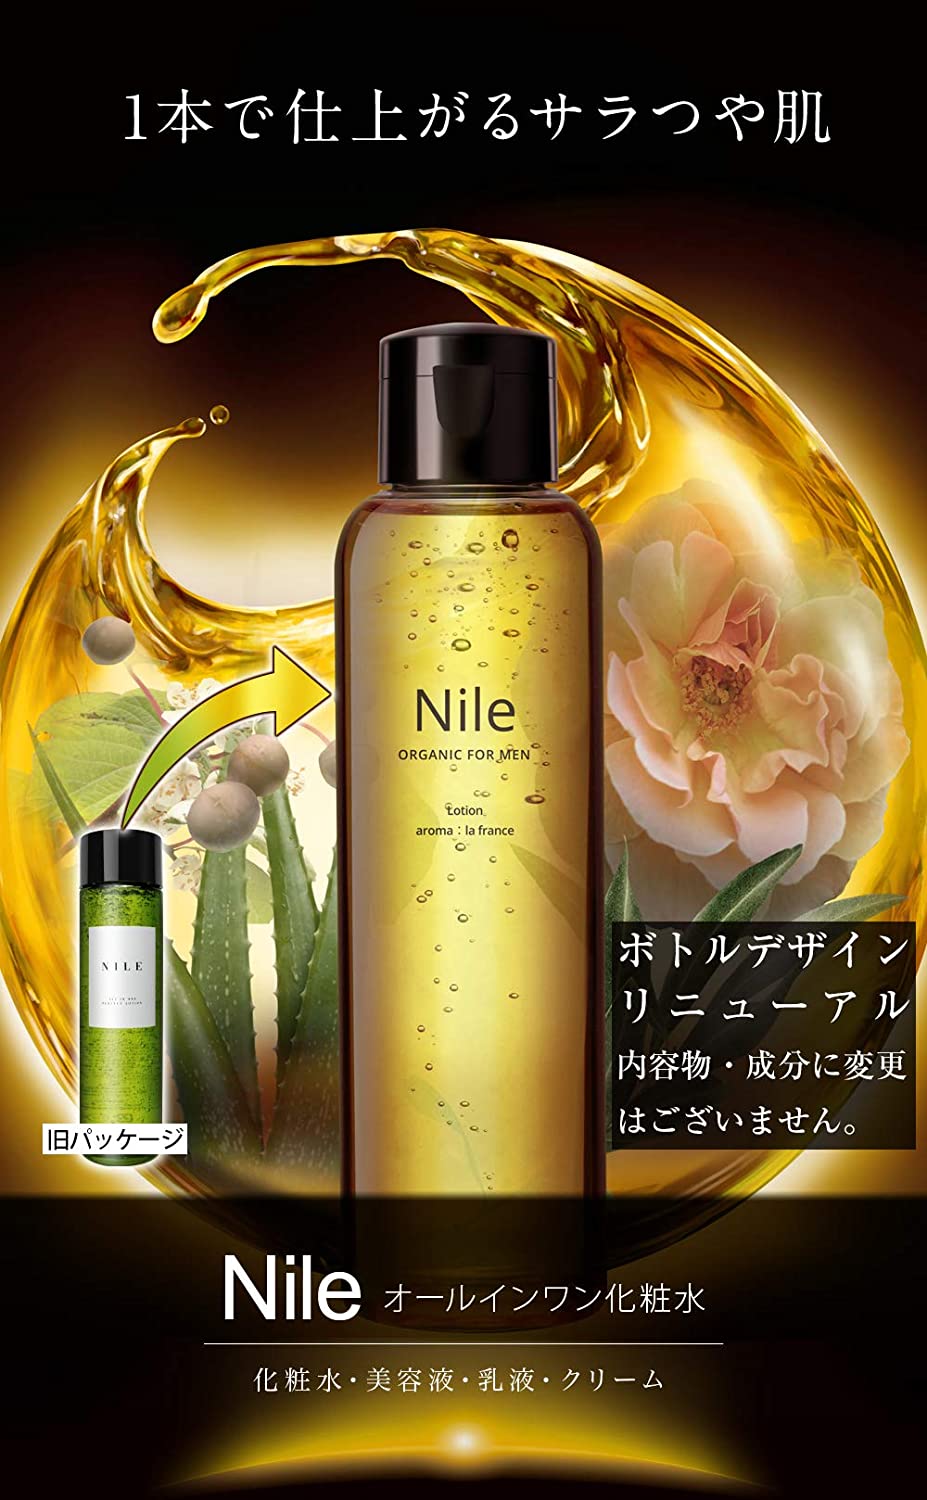 Nile Organic